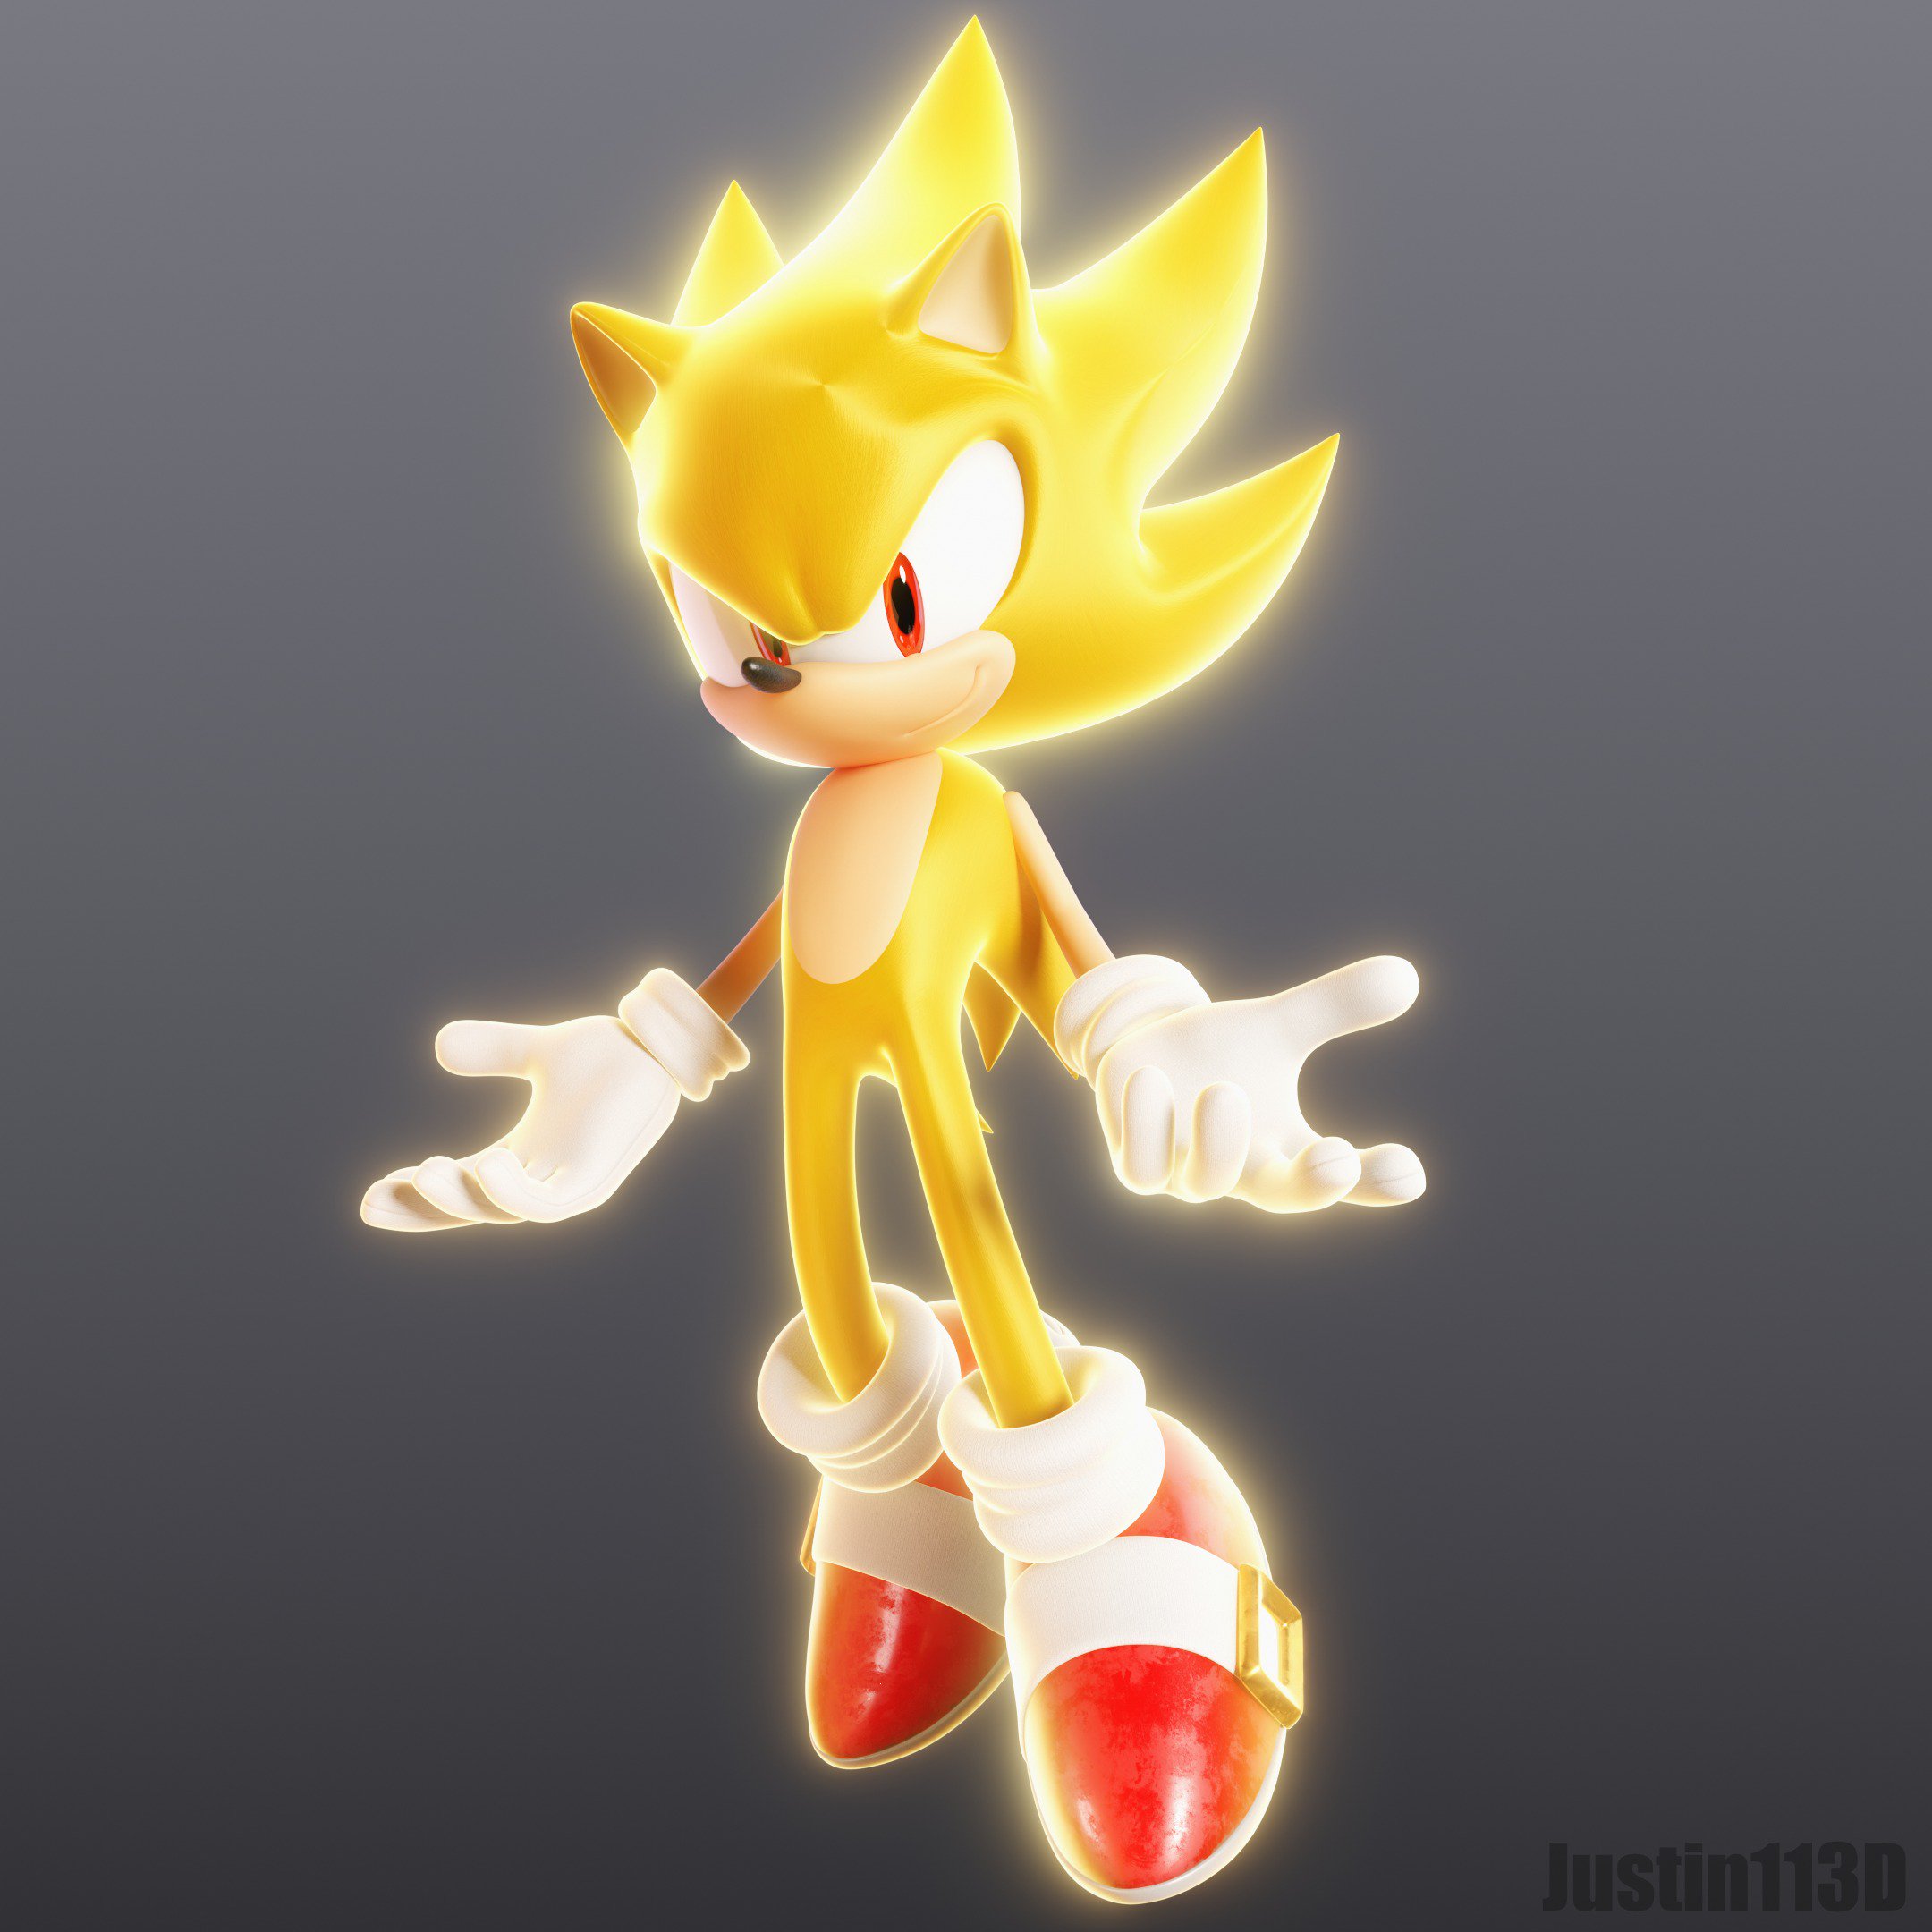 Super Sonic is ready by Geki696 on DeviantArt